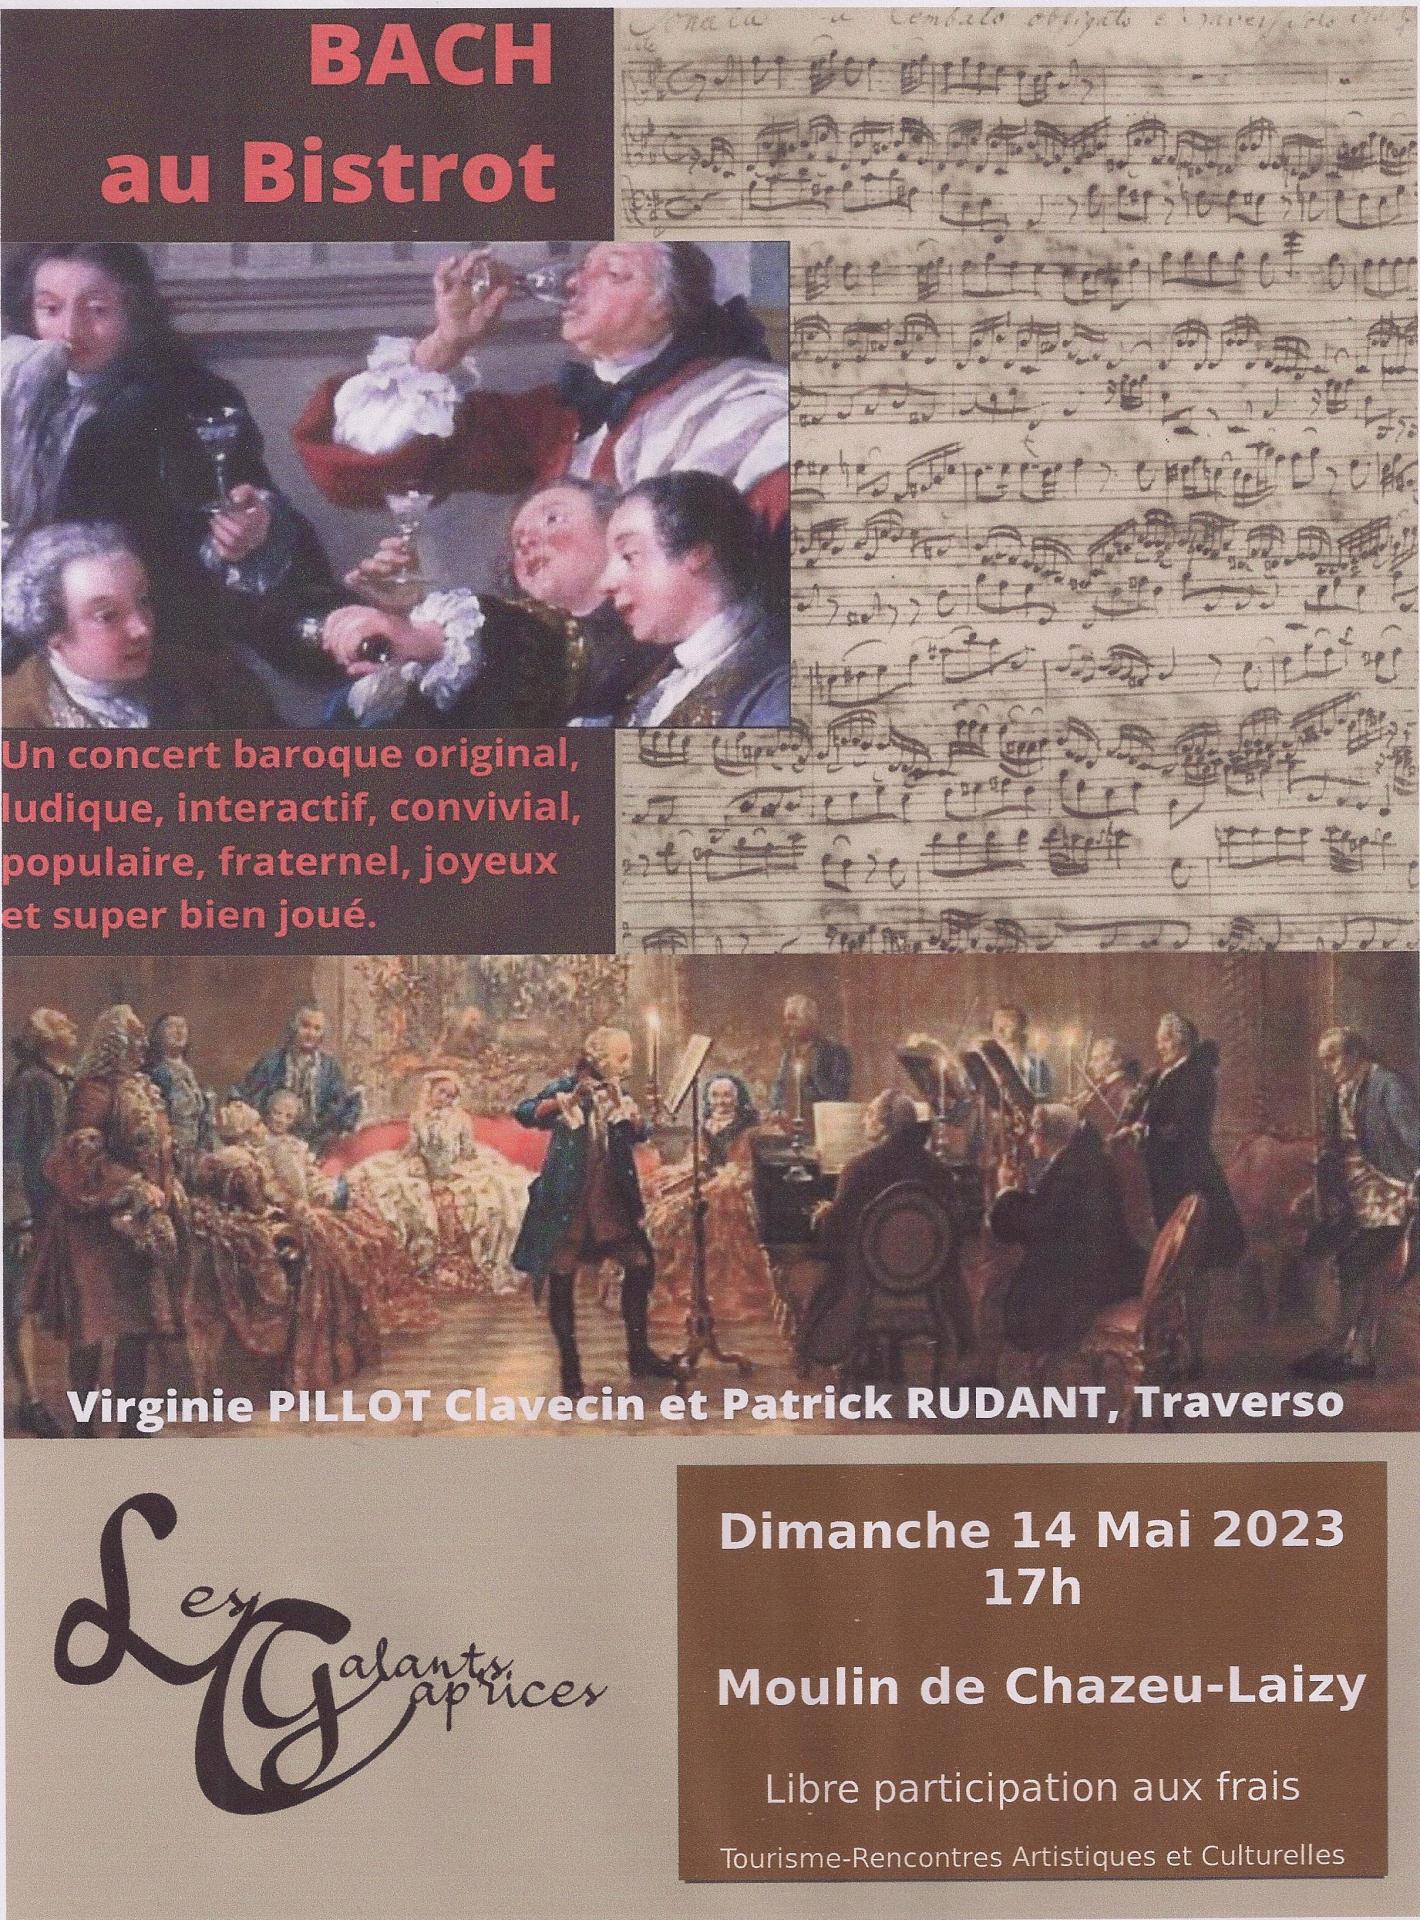 Dimanche 14 mai à 17h : on retrouve “Bach au bistrot” pour un concert avec Virginie Pillot, clavecin, et Patrick Rudant, traverso